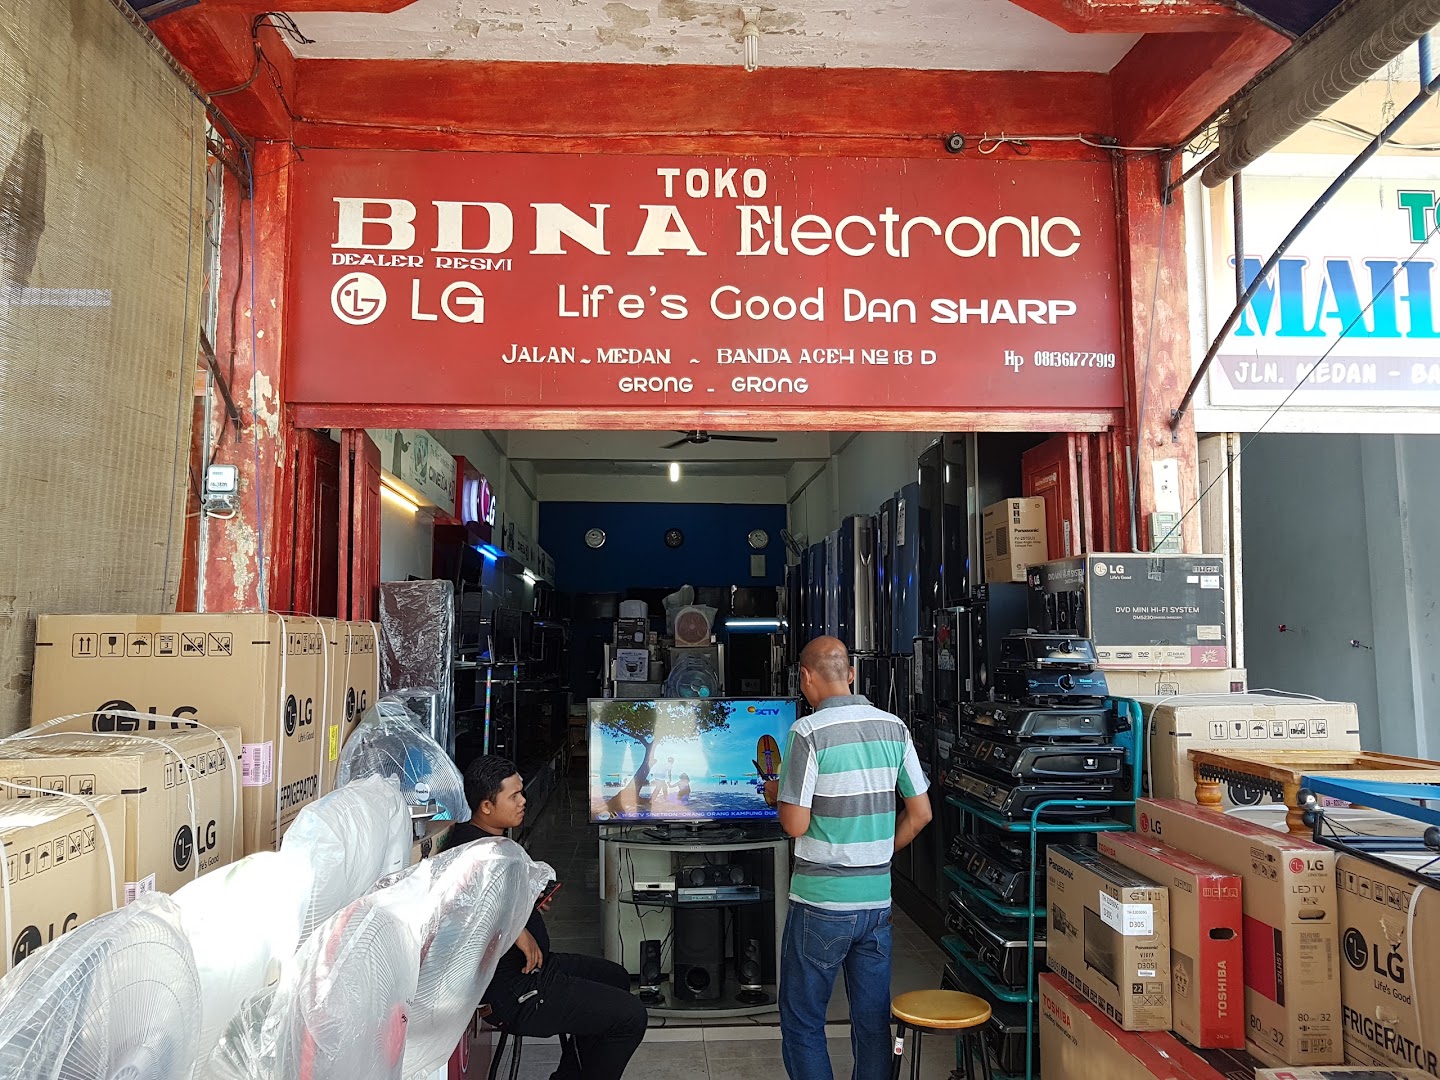 Toko Bdna Electronics Photo